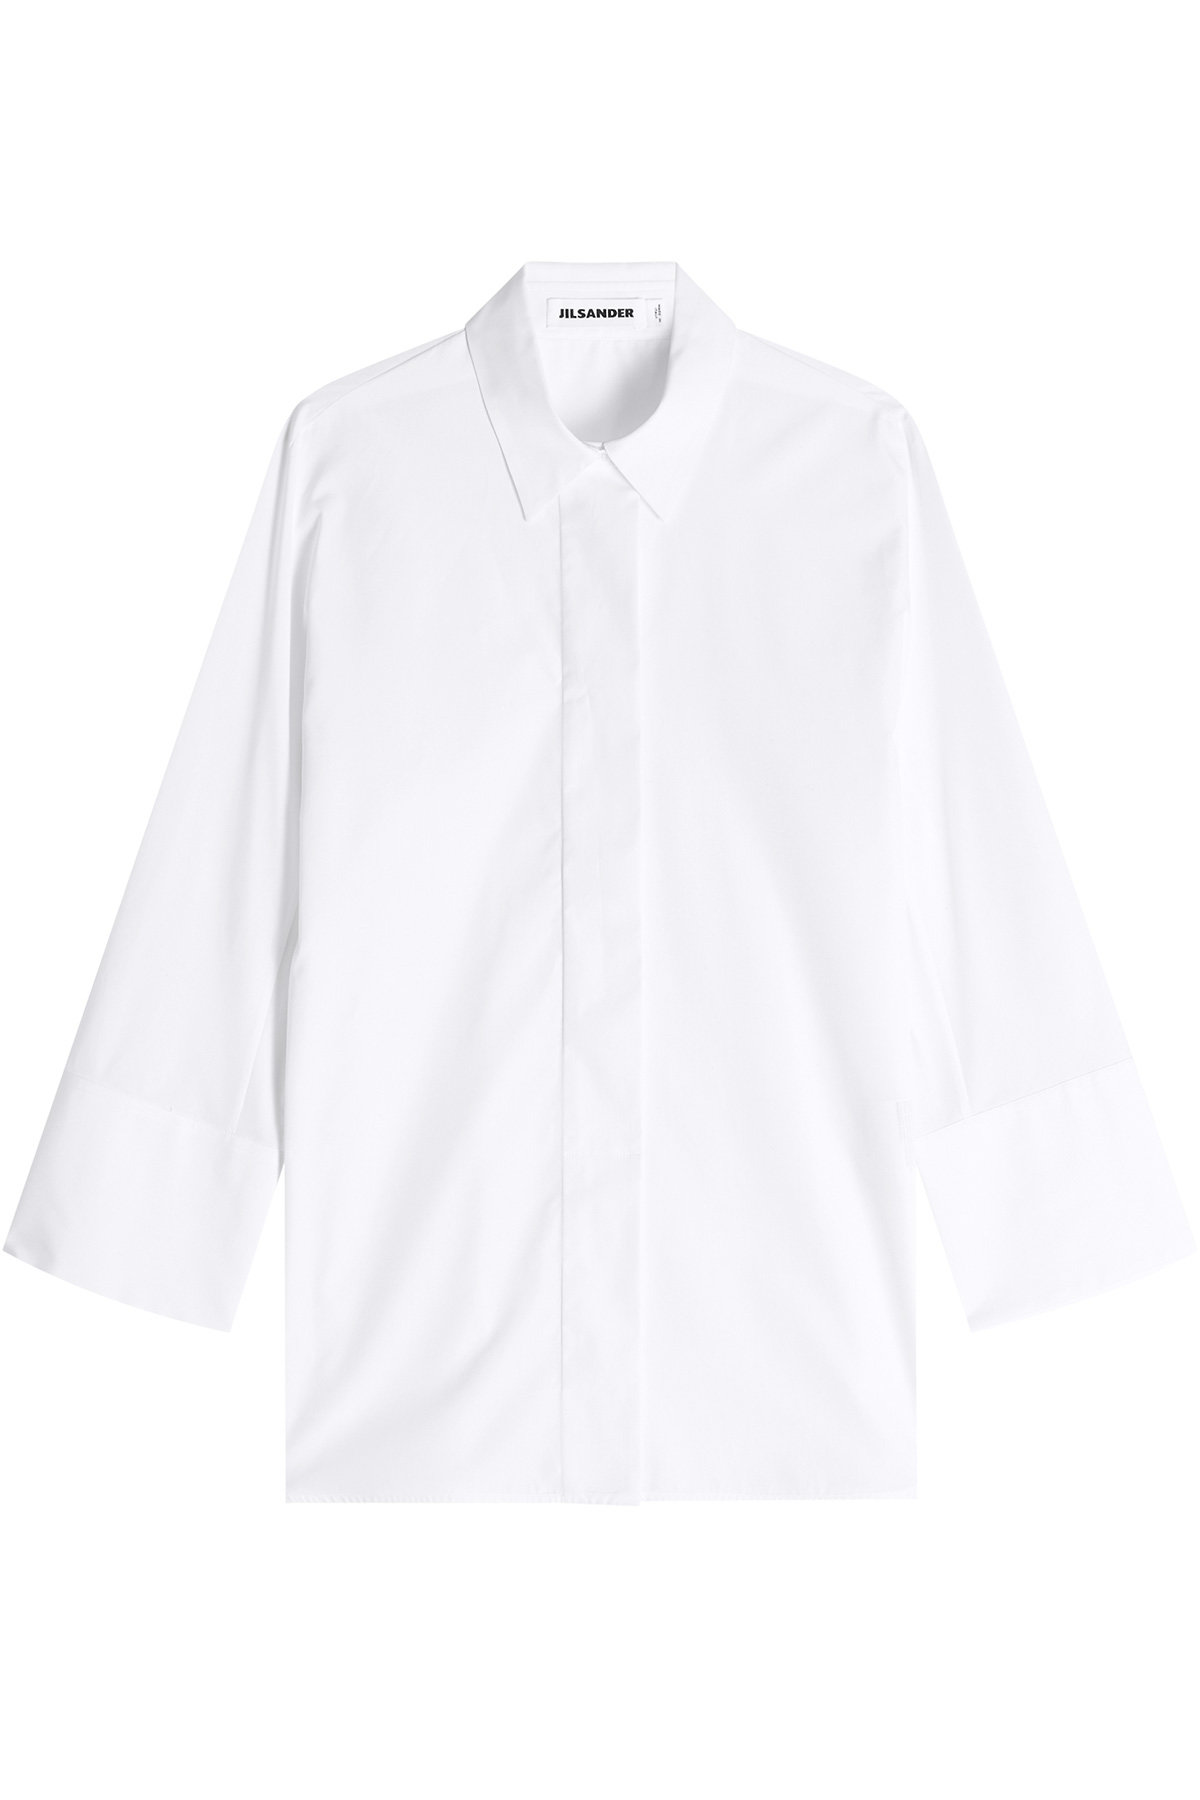 Jil Sander - Cotton Button Down Shirt